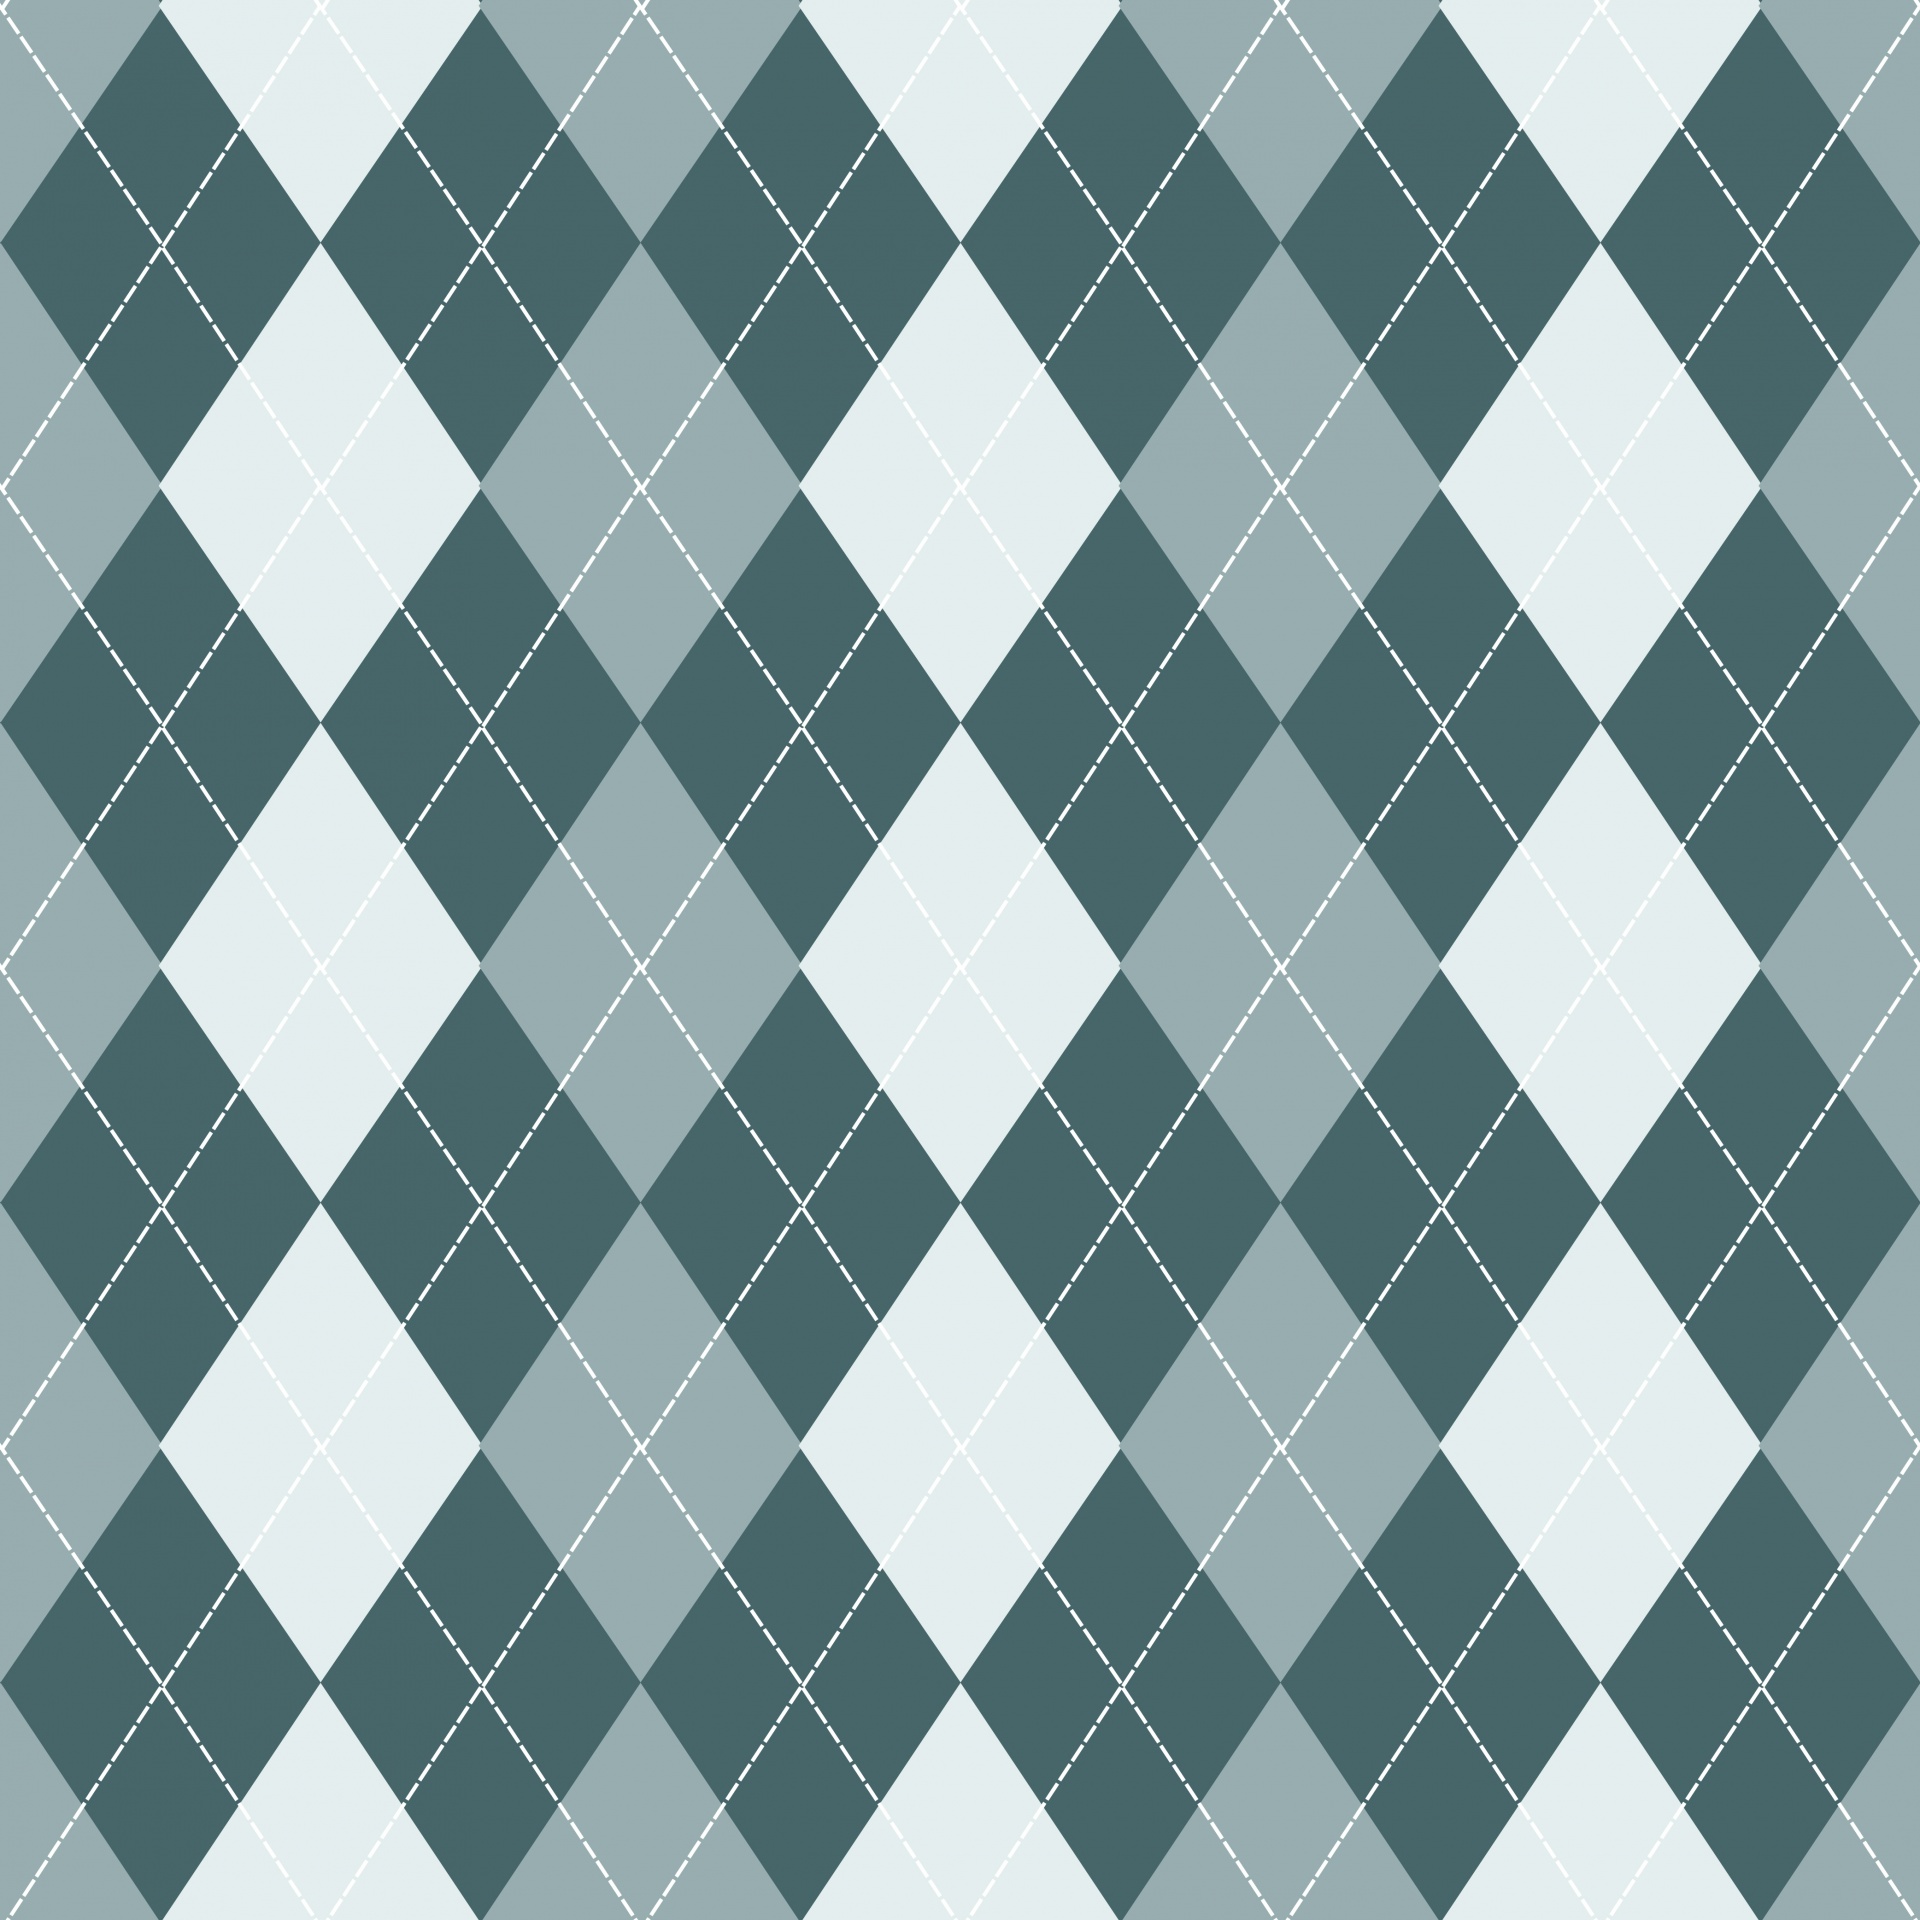 argyle background pattern free photo